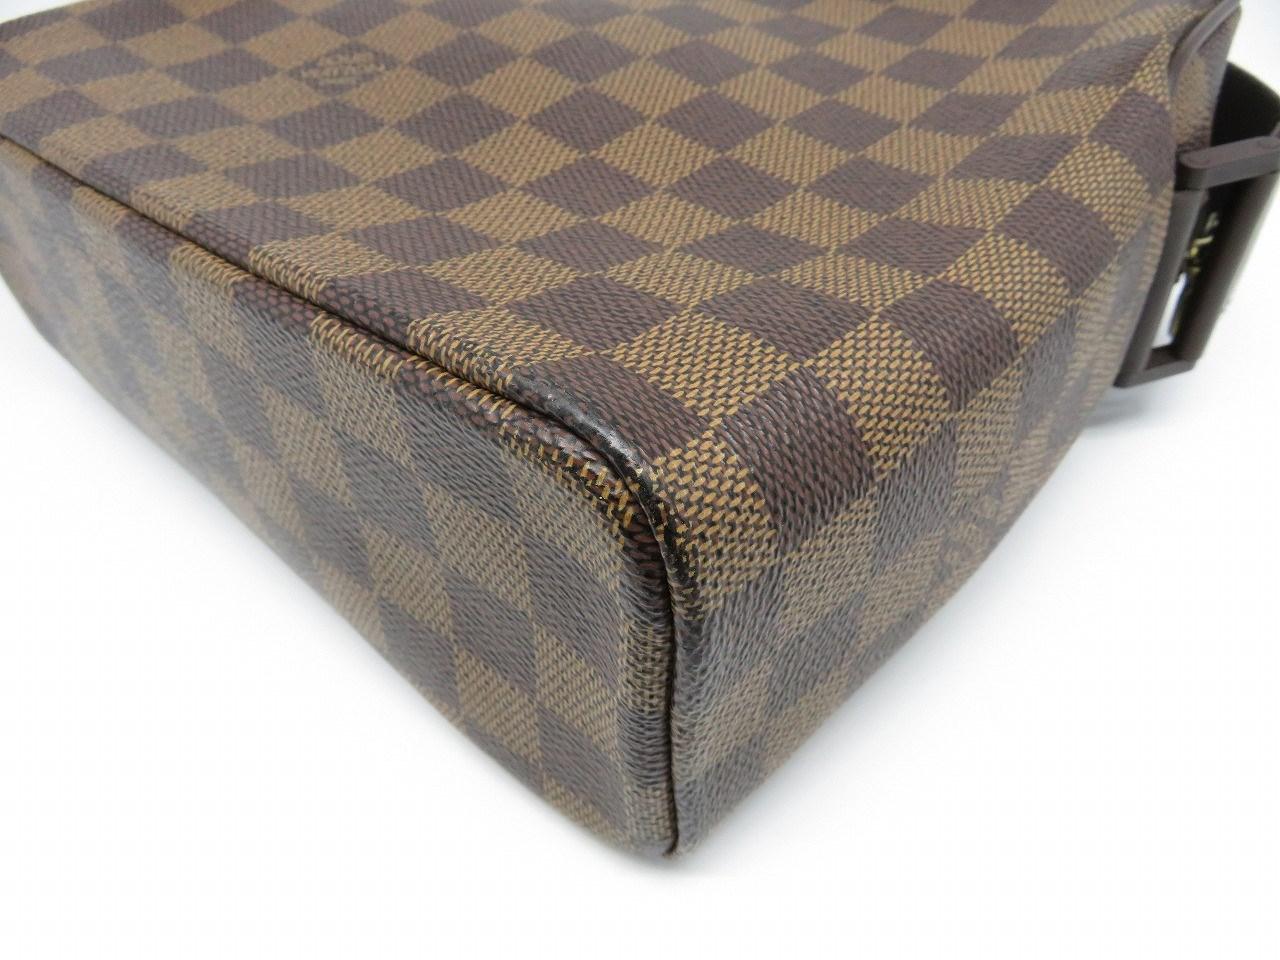 Lyst - Louis Vuitton Lv Saleya Mm Shoulder Bag Damier N51182 Brown 9061 in Brown